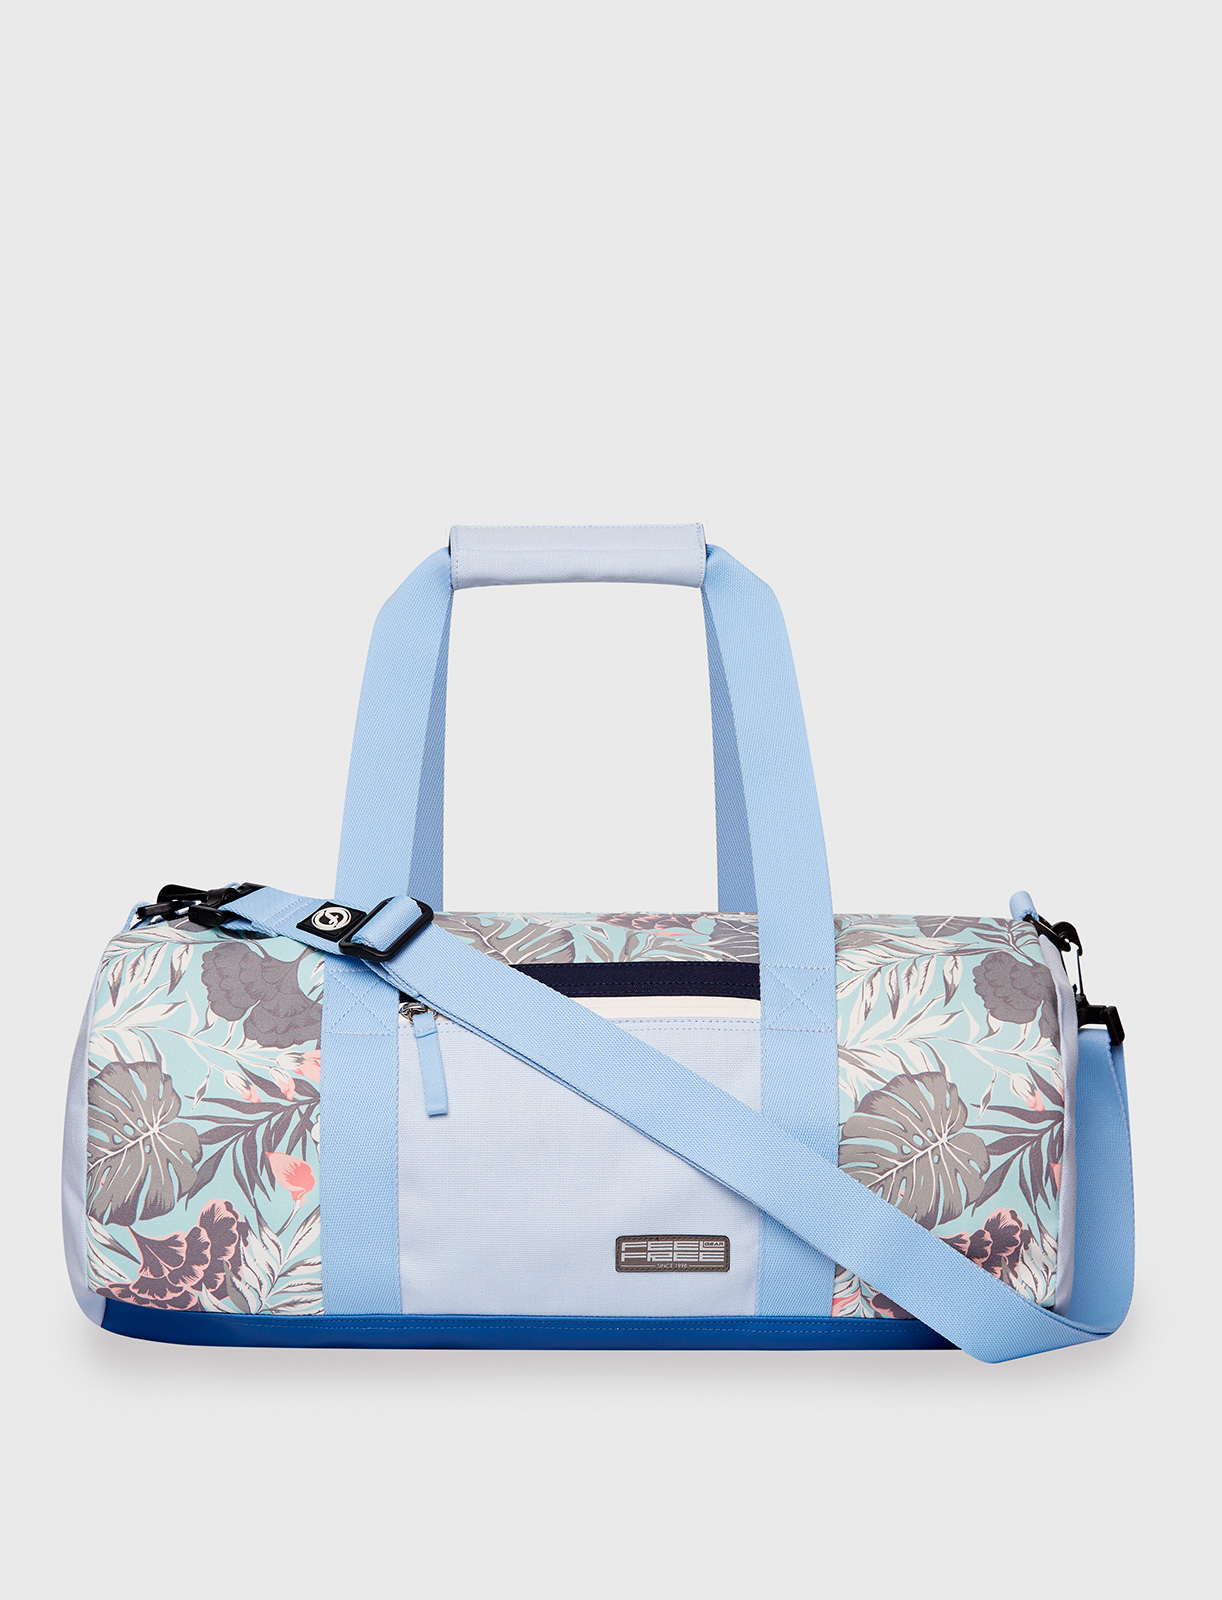 waterproof travel bag blue